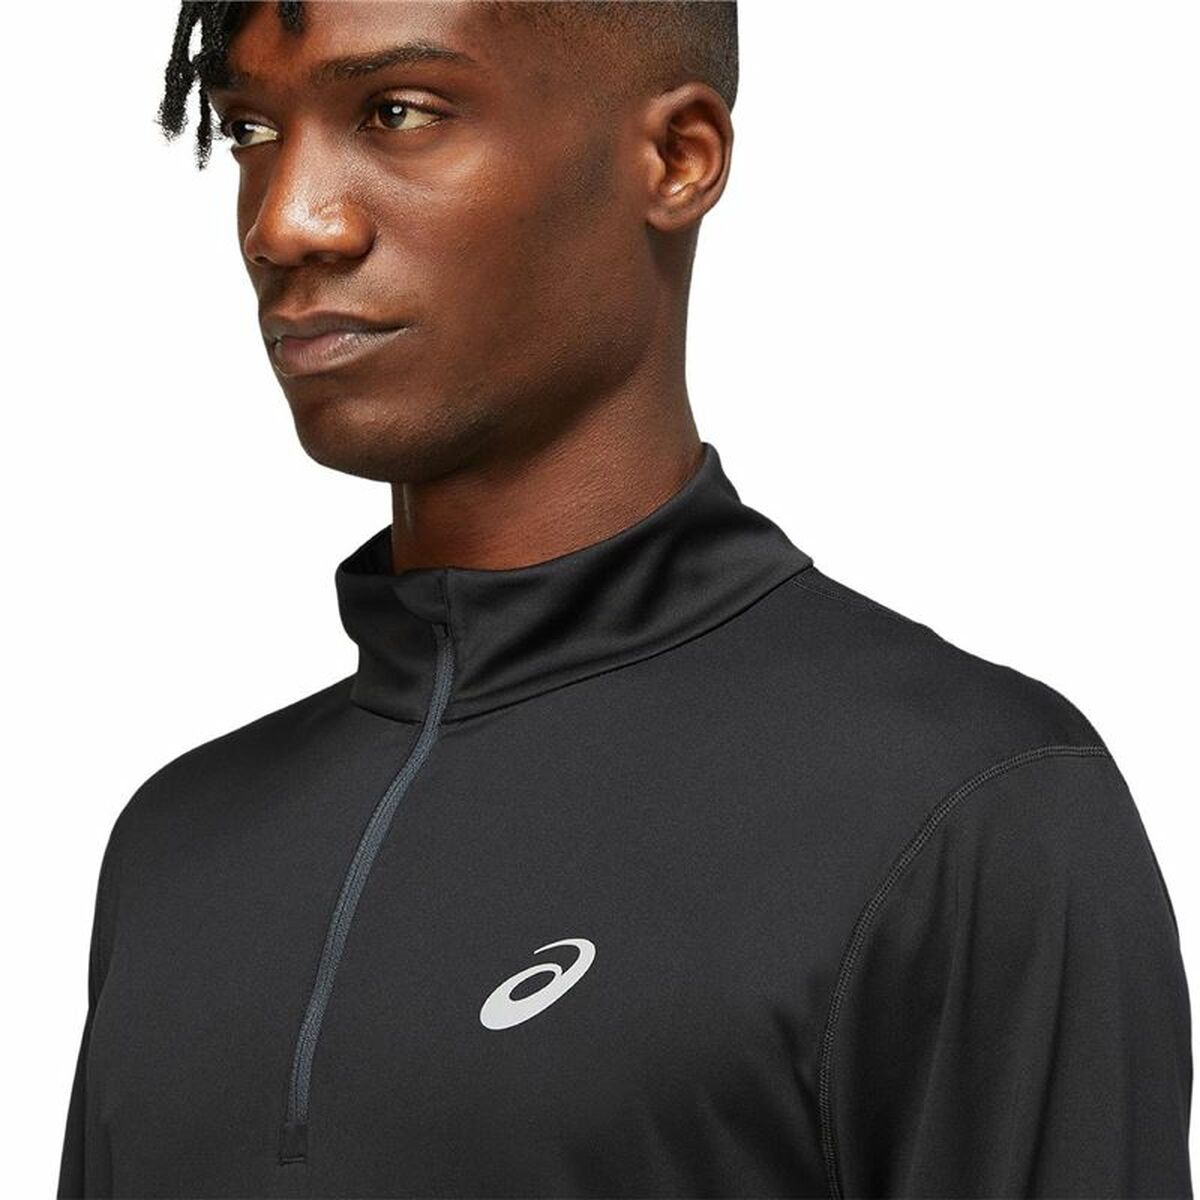 Kaufe Asics Core 1/2 Black Long Sleeve T-Shirt with Zipper bei AWK Flagship um € 50.00